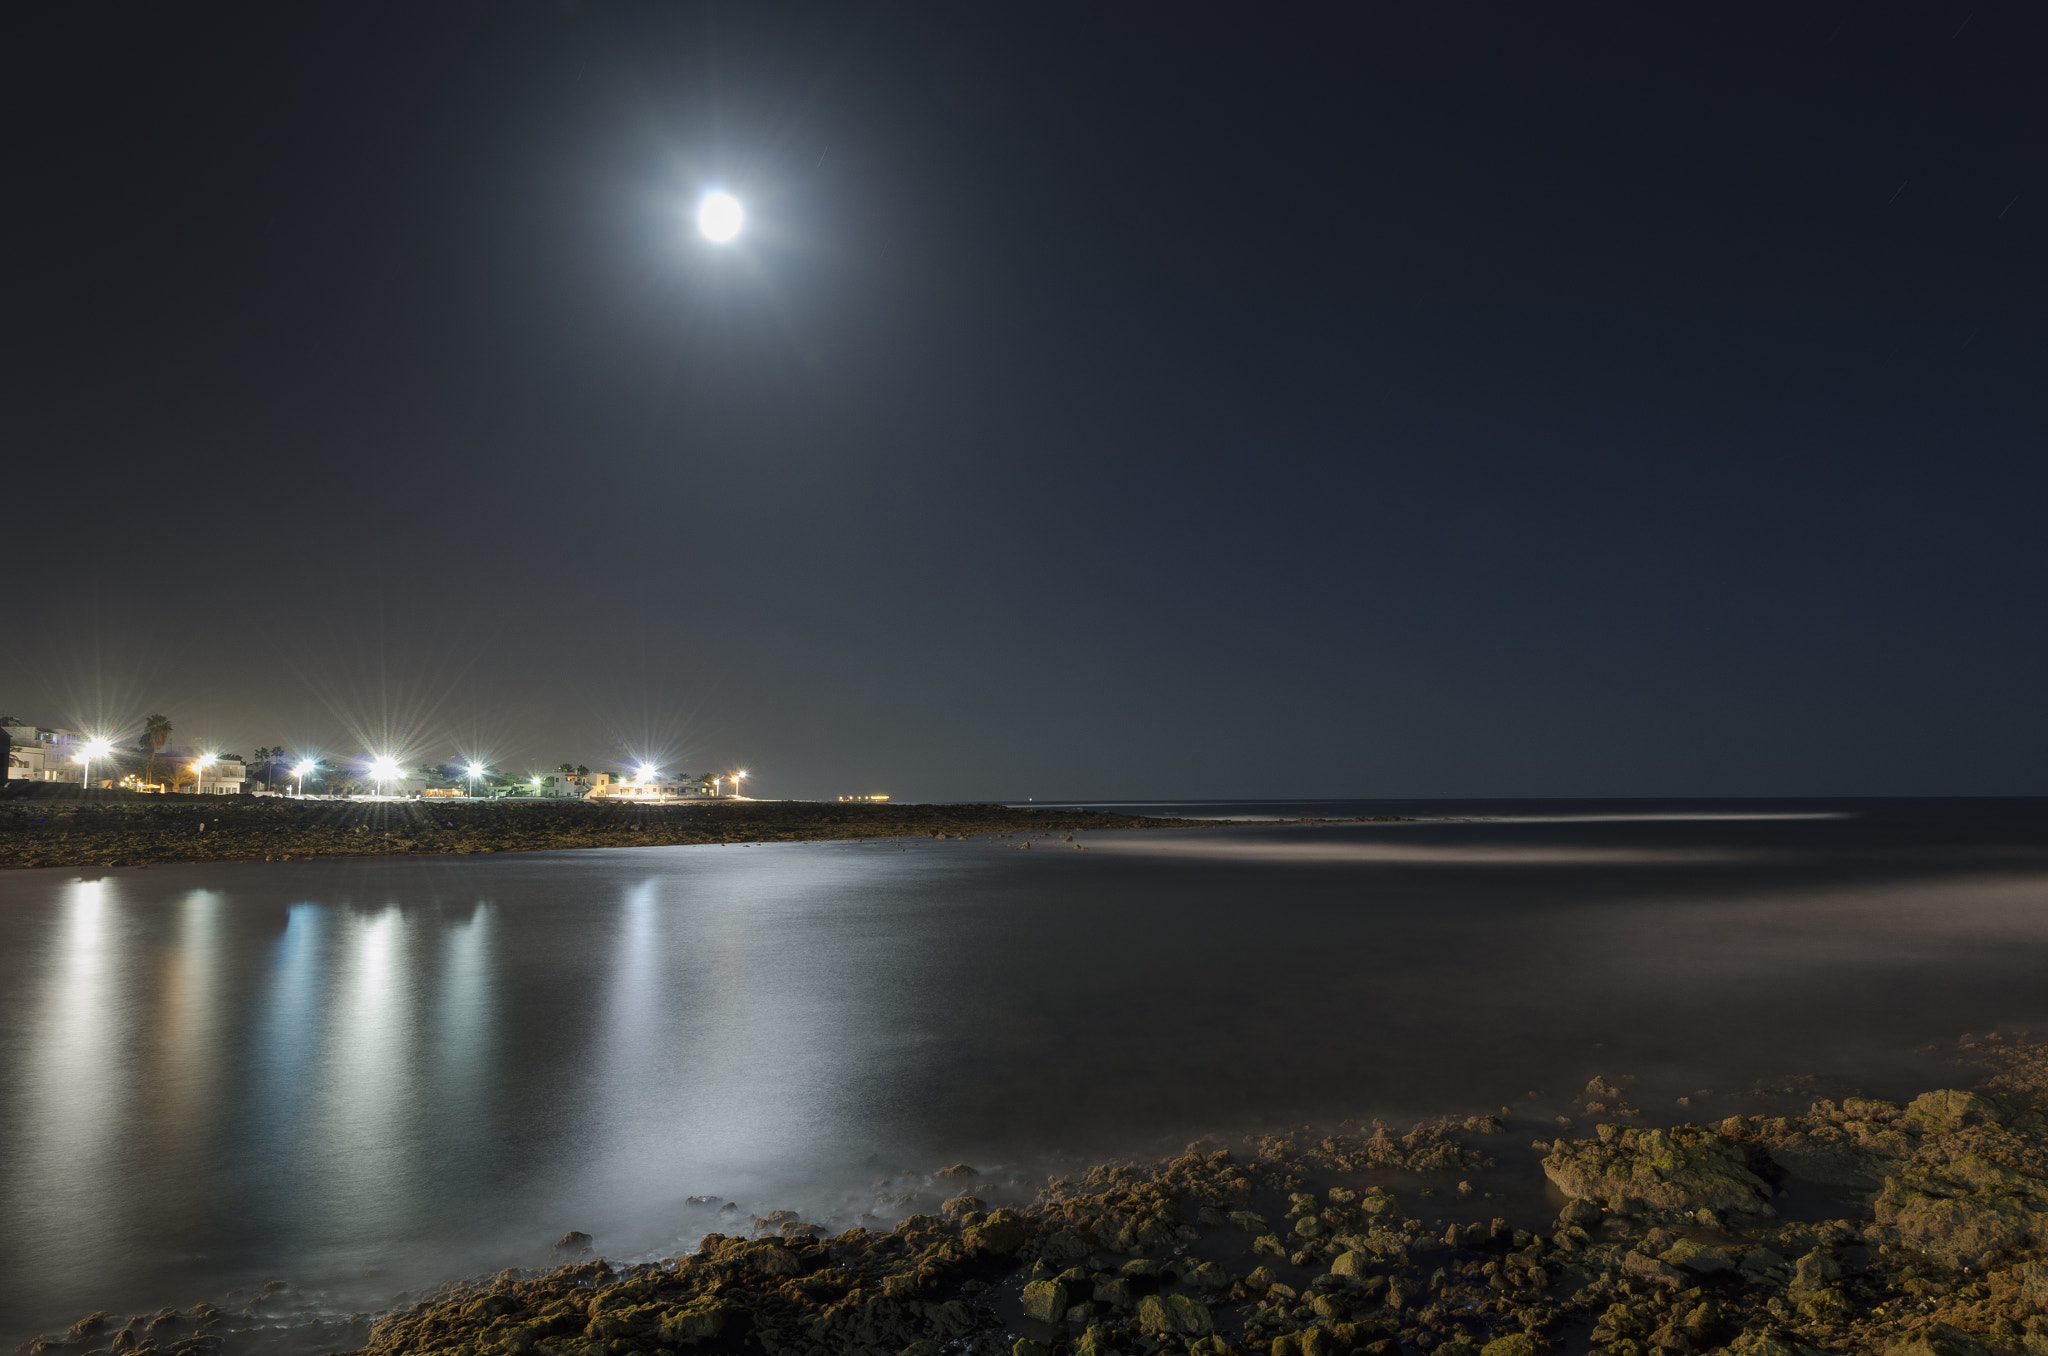 Nikon D7000 sample photo. Un lugar entre el mar, la noche y las luces. photography